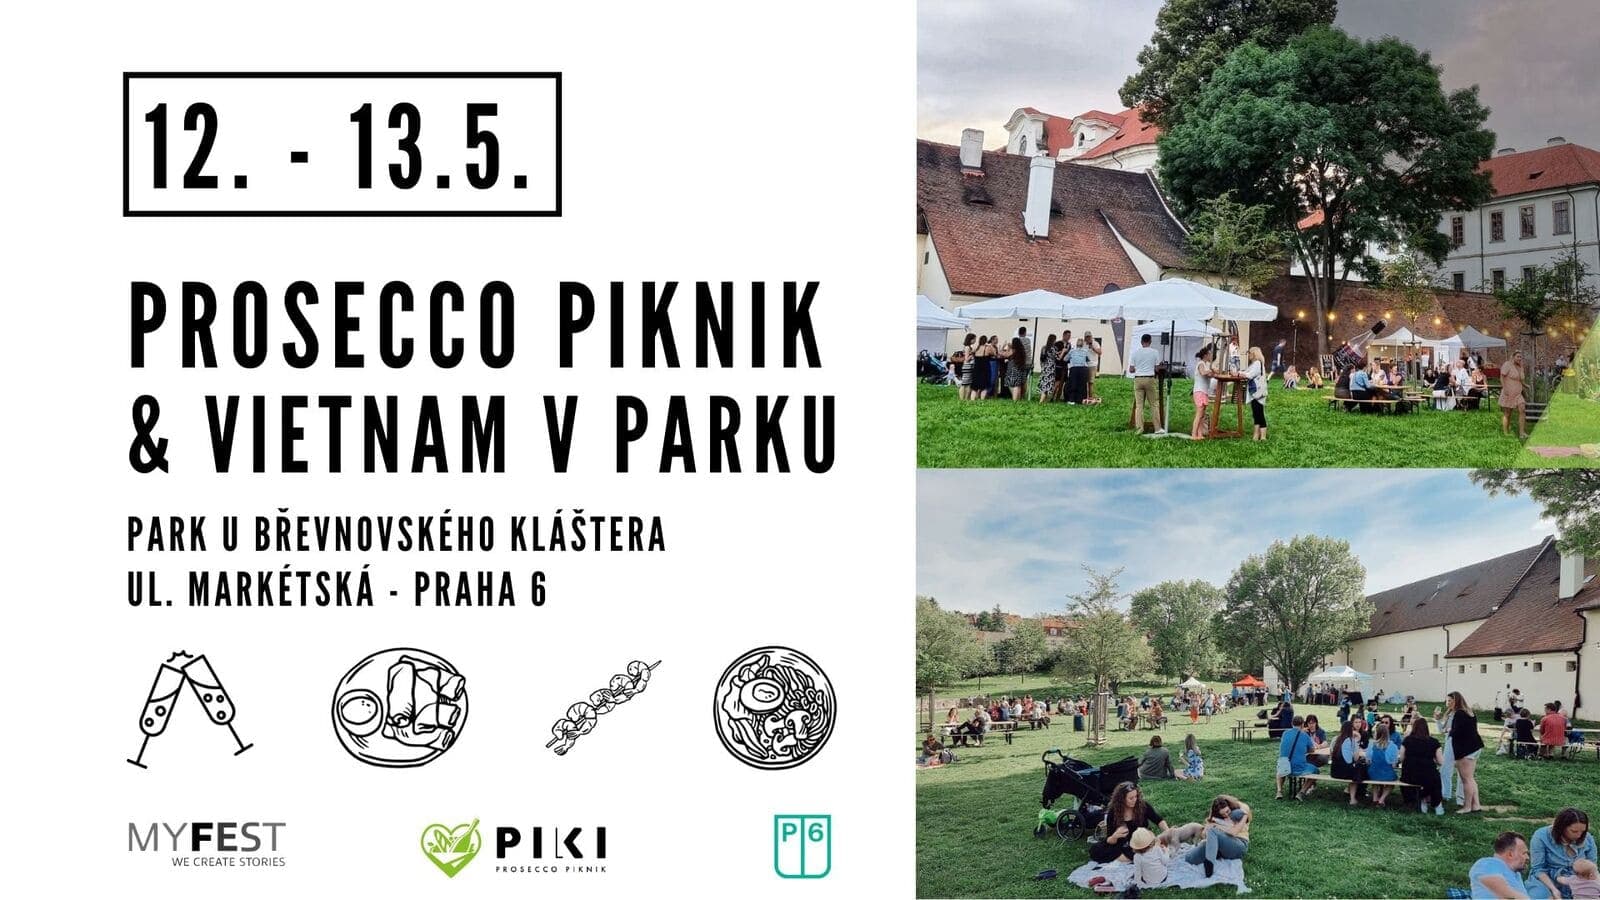 12 и 13 мая в Праге состоится необычное мероприятие: пикник просекко и вьетнамской кухни